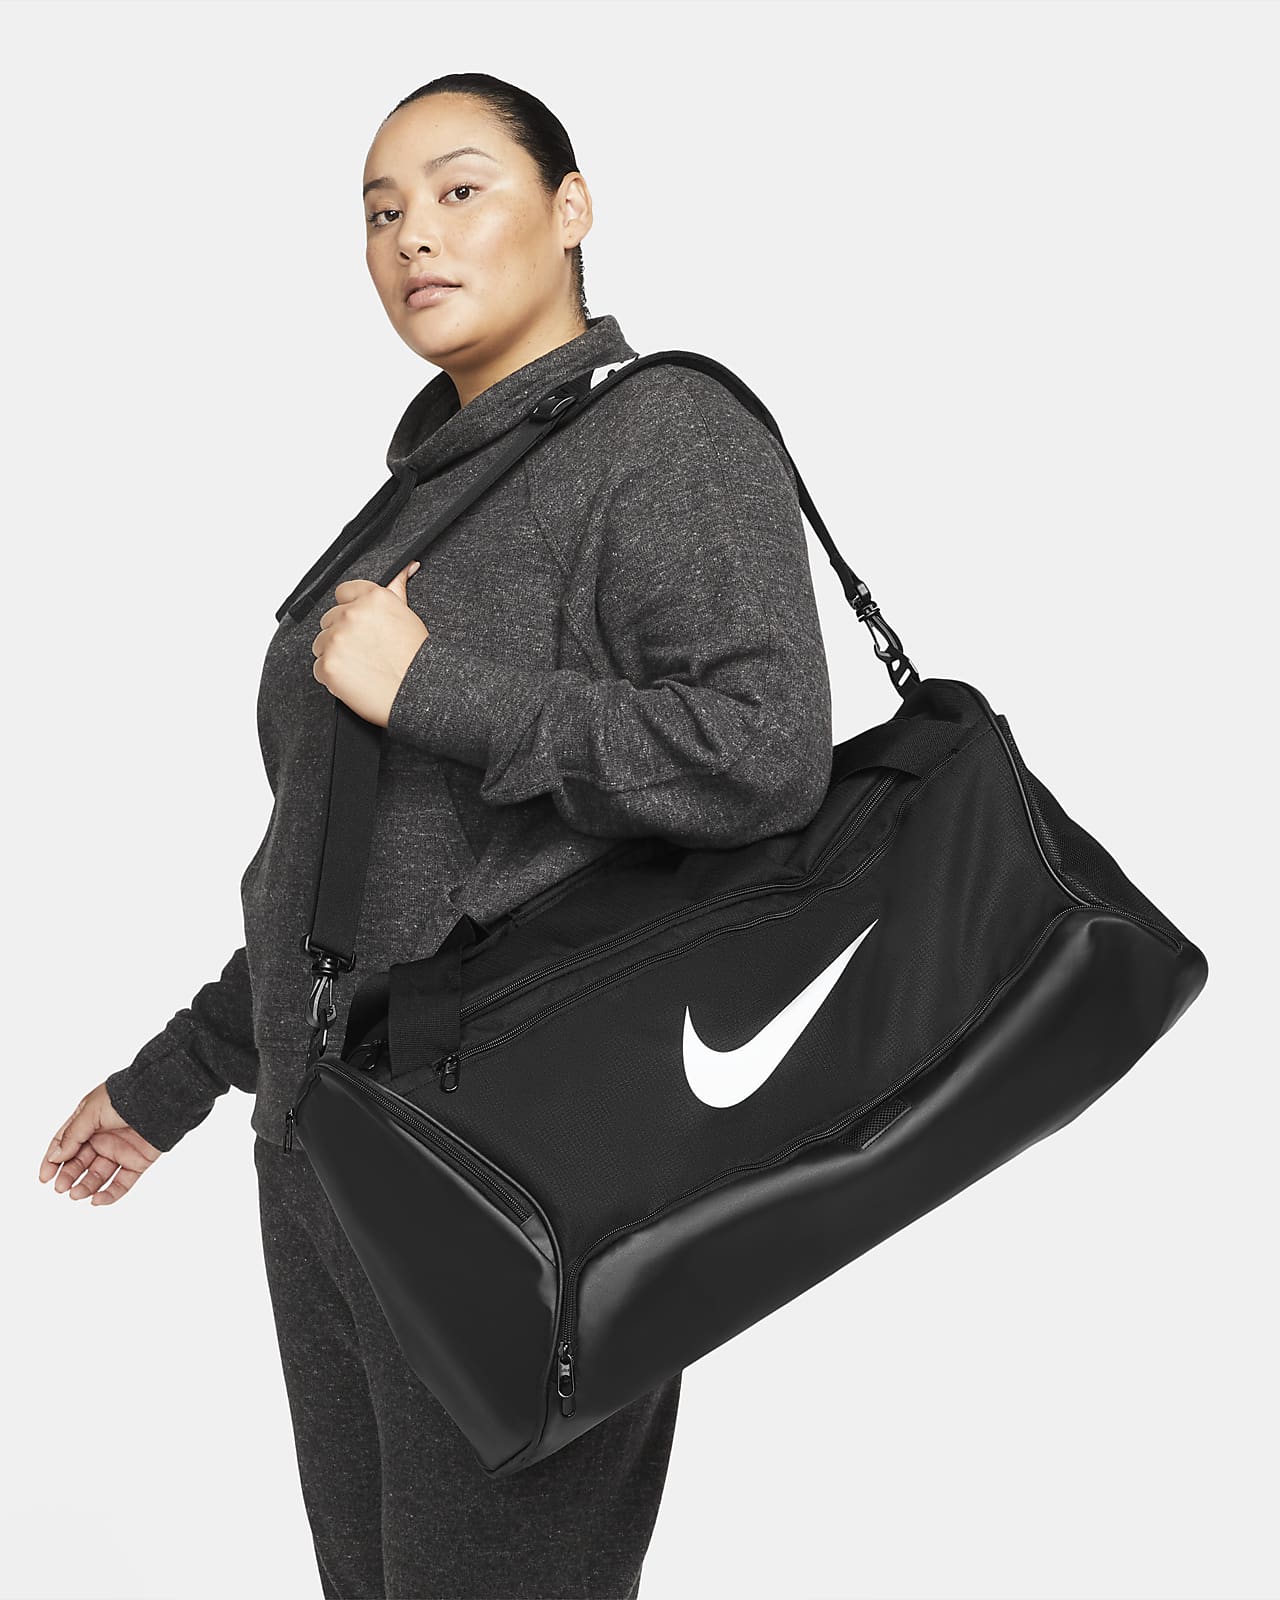 Τσάντα γυμναστηρίου για προπόνηση Nike Brasilia 9.5 (μέγεθος Medium, 60 L)